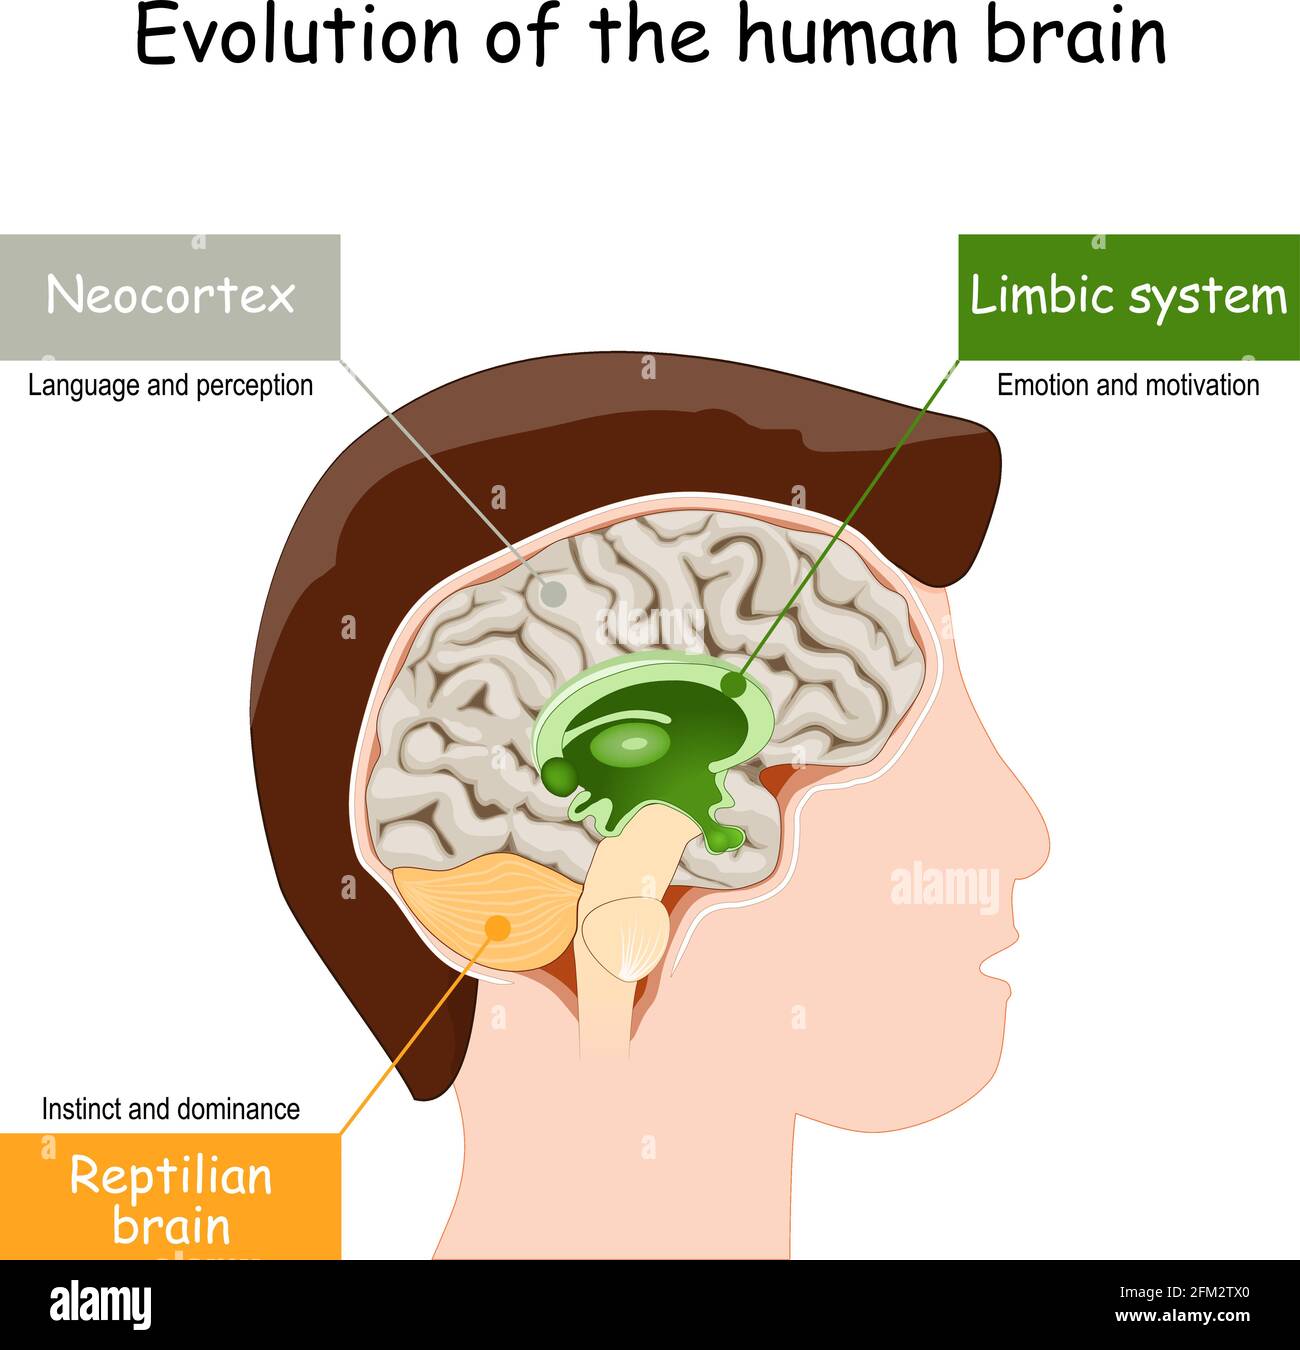 Evolution des Gehirns vom reptilianischen Gehirn zum limbischen System und Neokortex. Vektorgrafik Stock Vektor